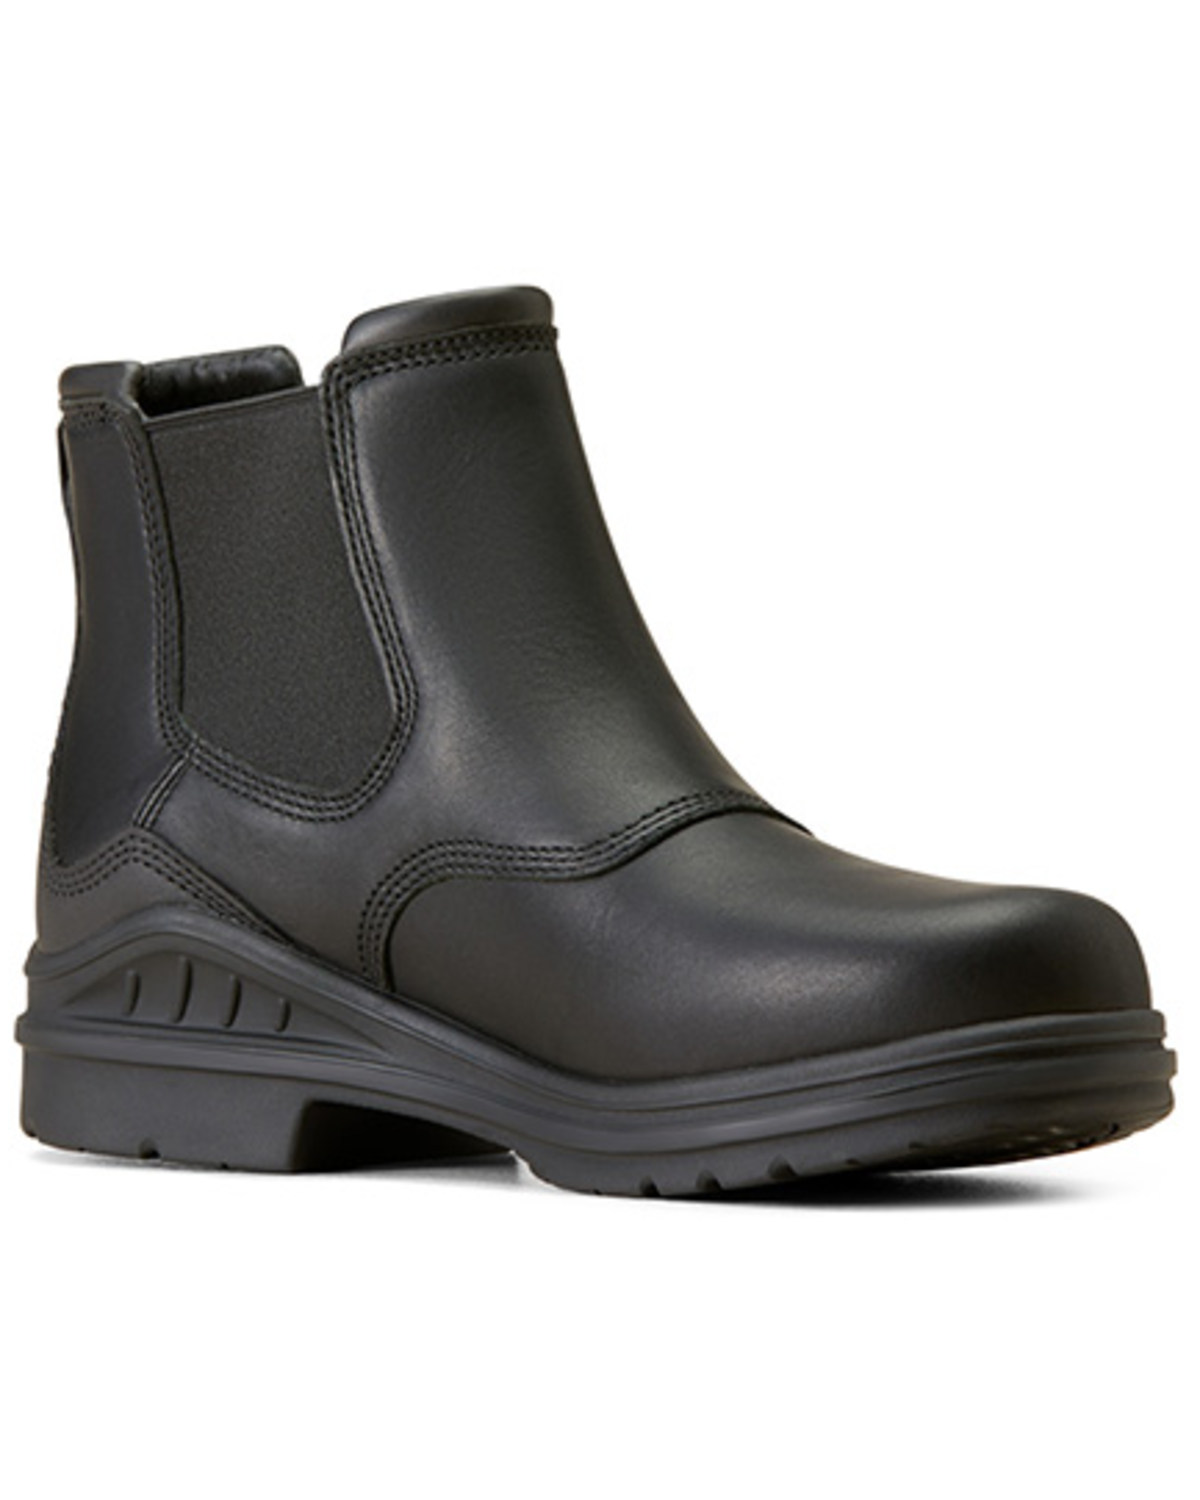 Ariat Men's Barnyard Twin Gore II Waterproof Boots - Round Toe